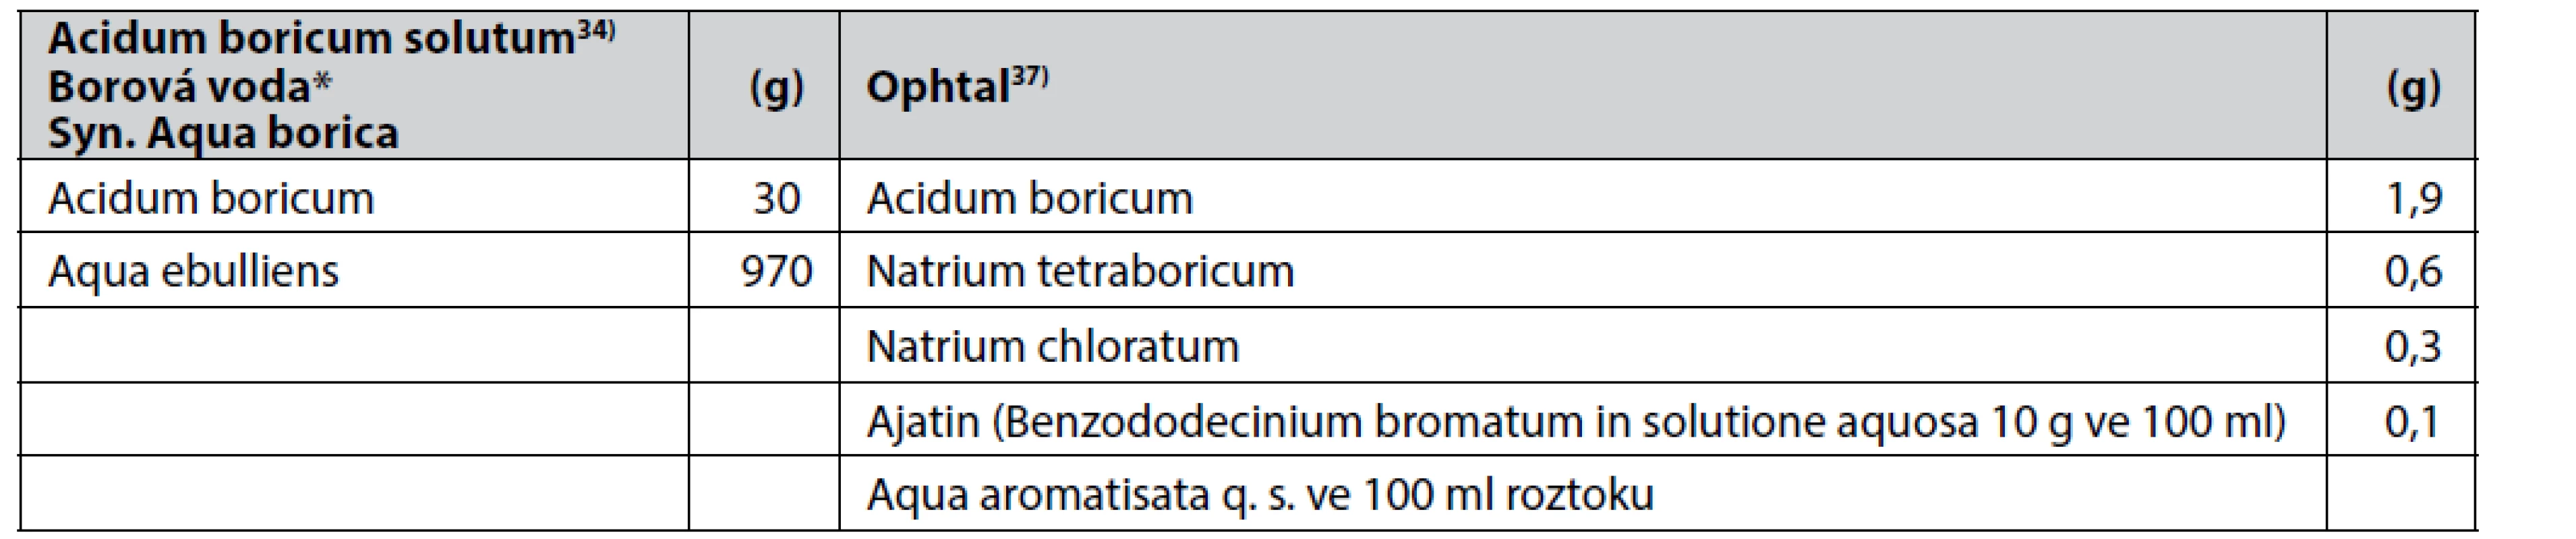 Složení léčivých přípravků Acidum boricum solutum a Ophtal